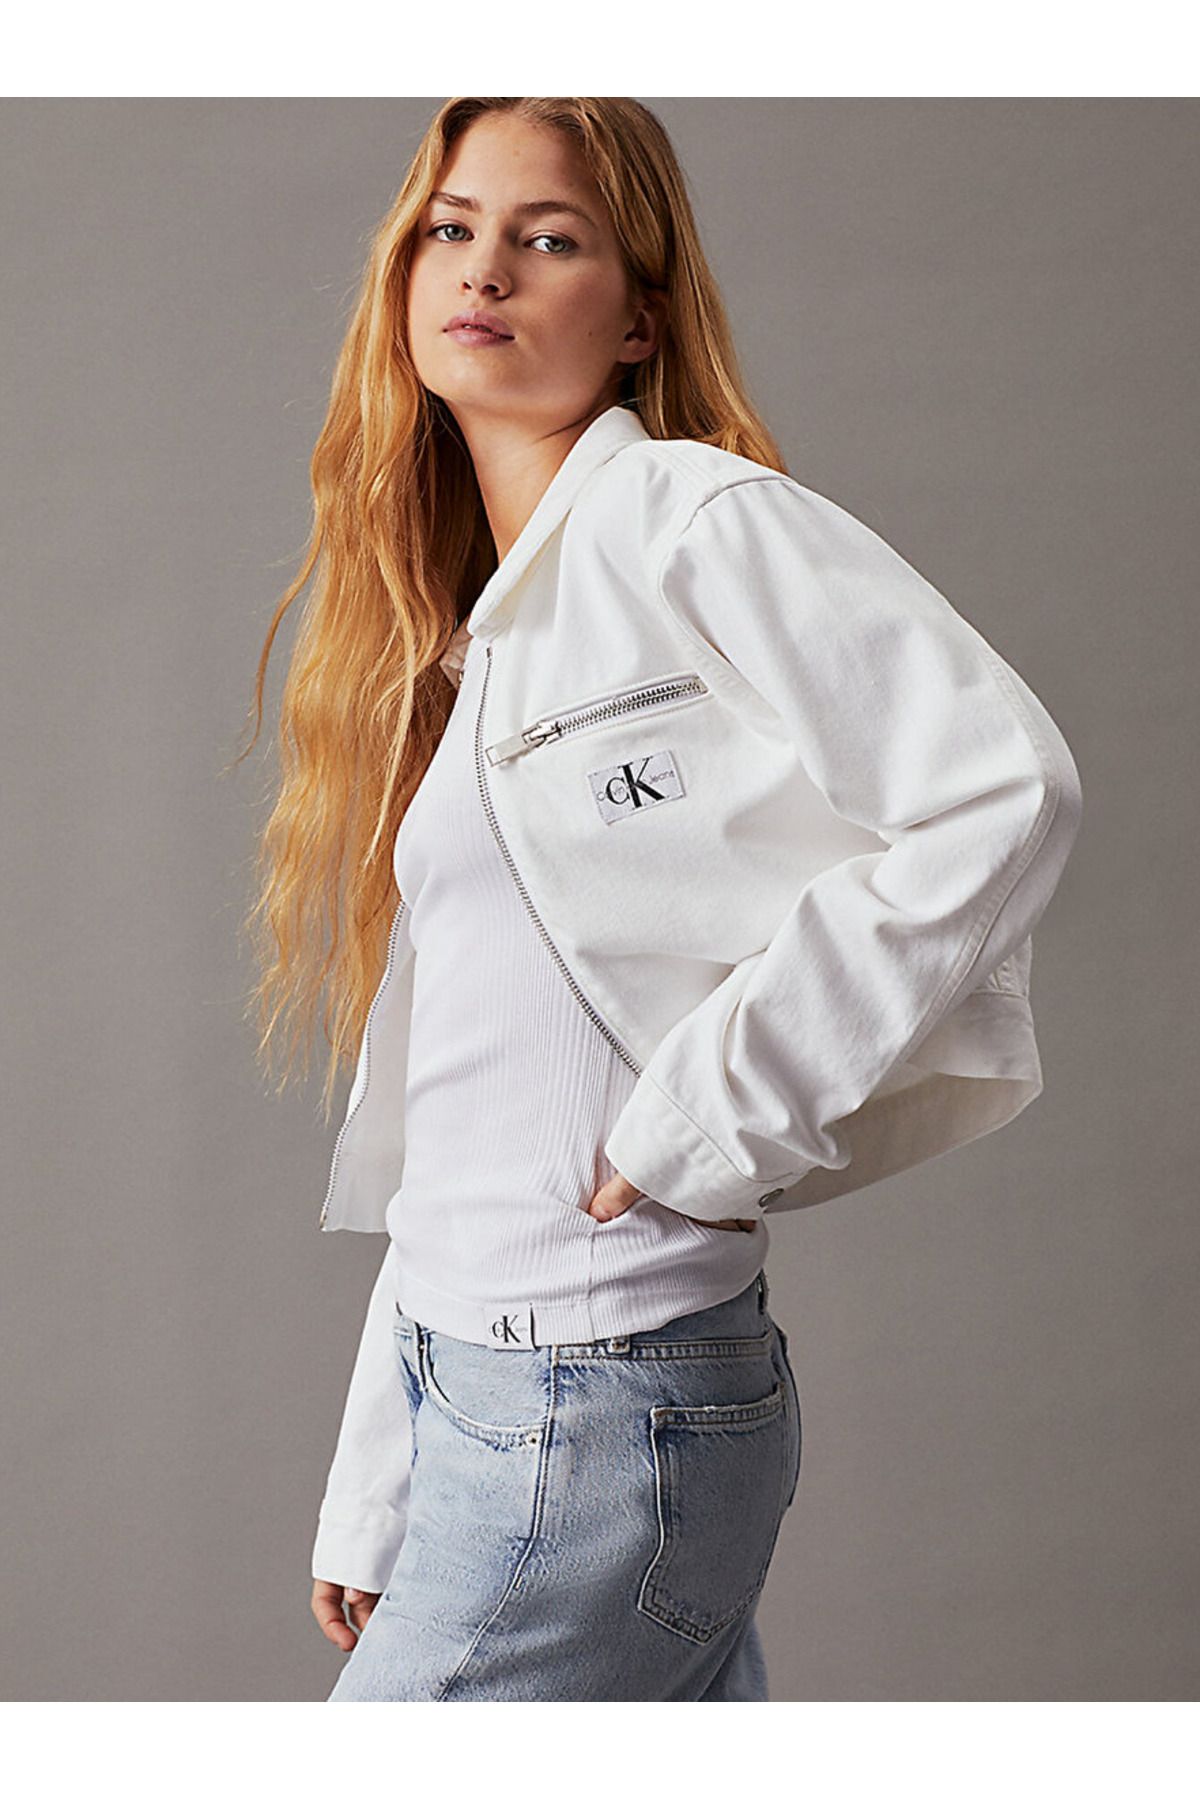 Calvin Klein Cropped Zip Up Denim Jacket